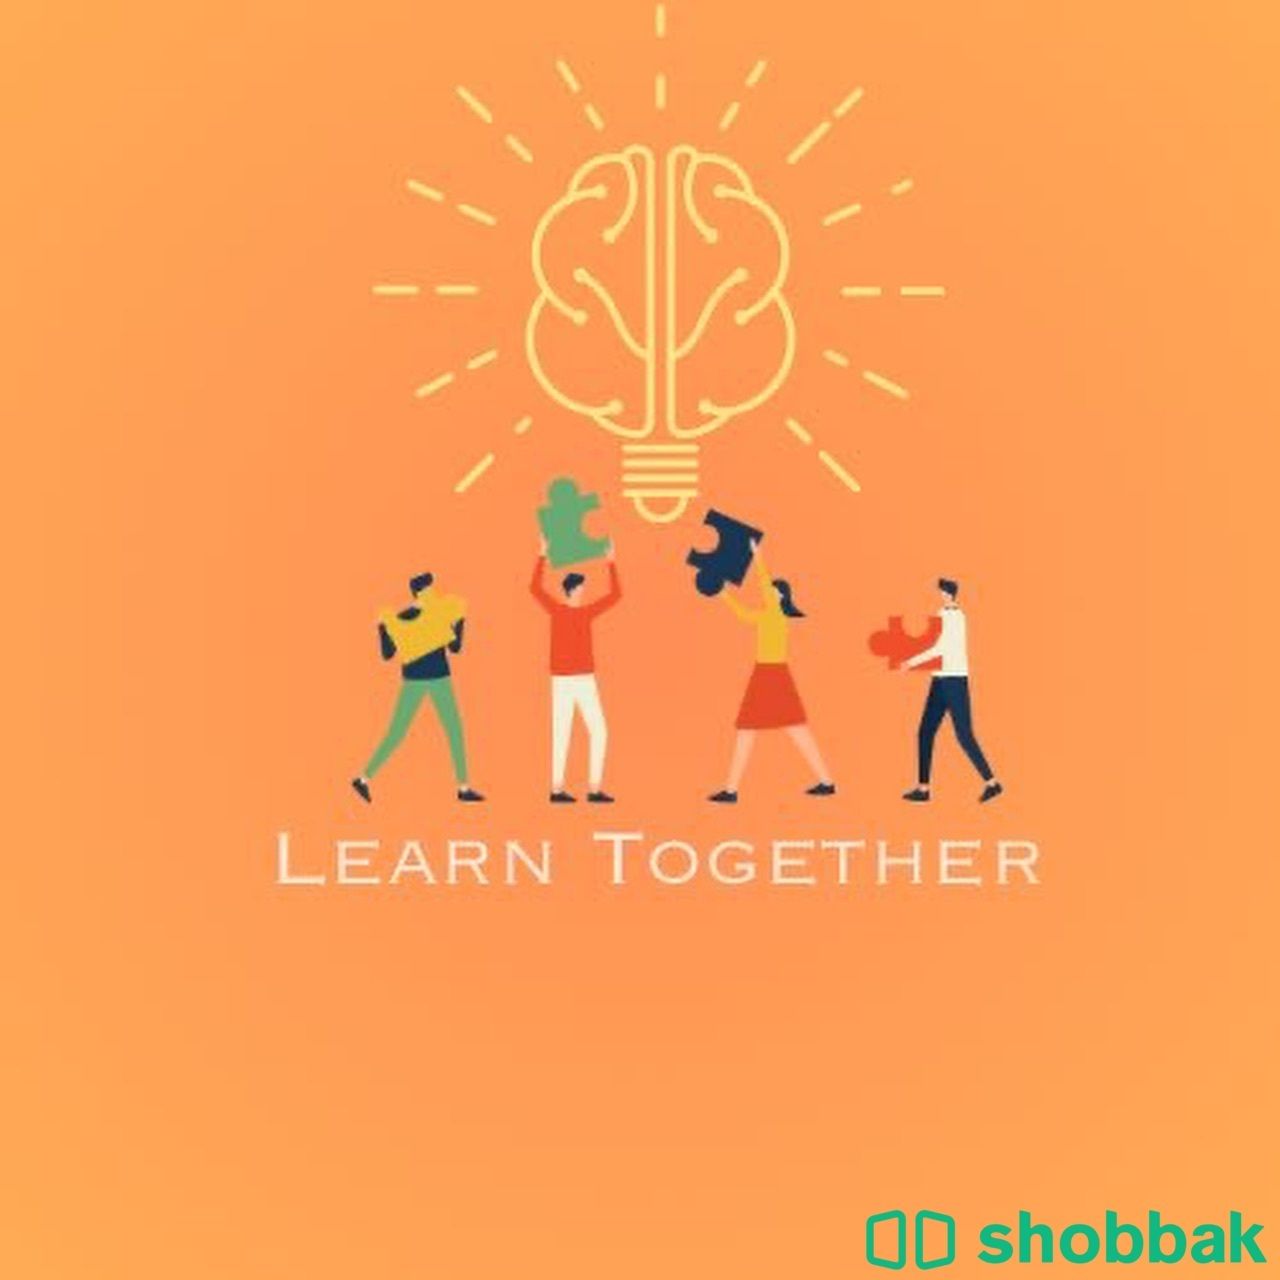 تعليم اللغة الإنجليزية والمتابعة Shobbak Saudi Arabia